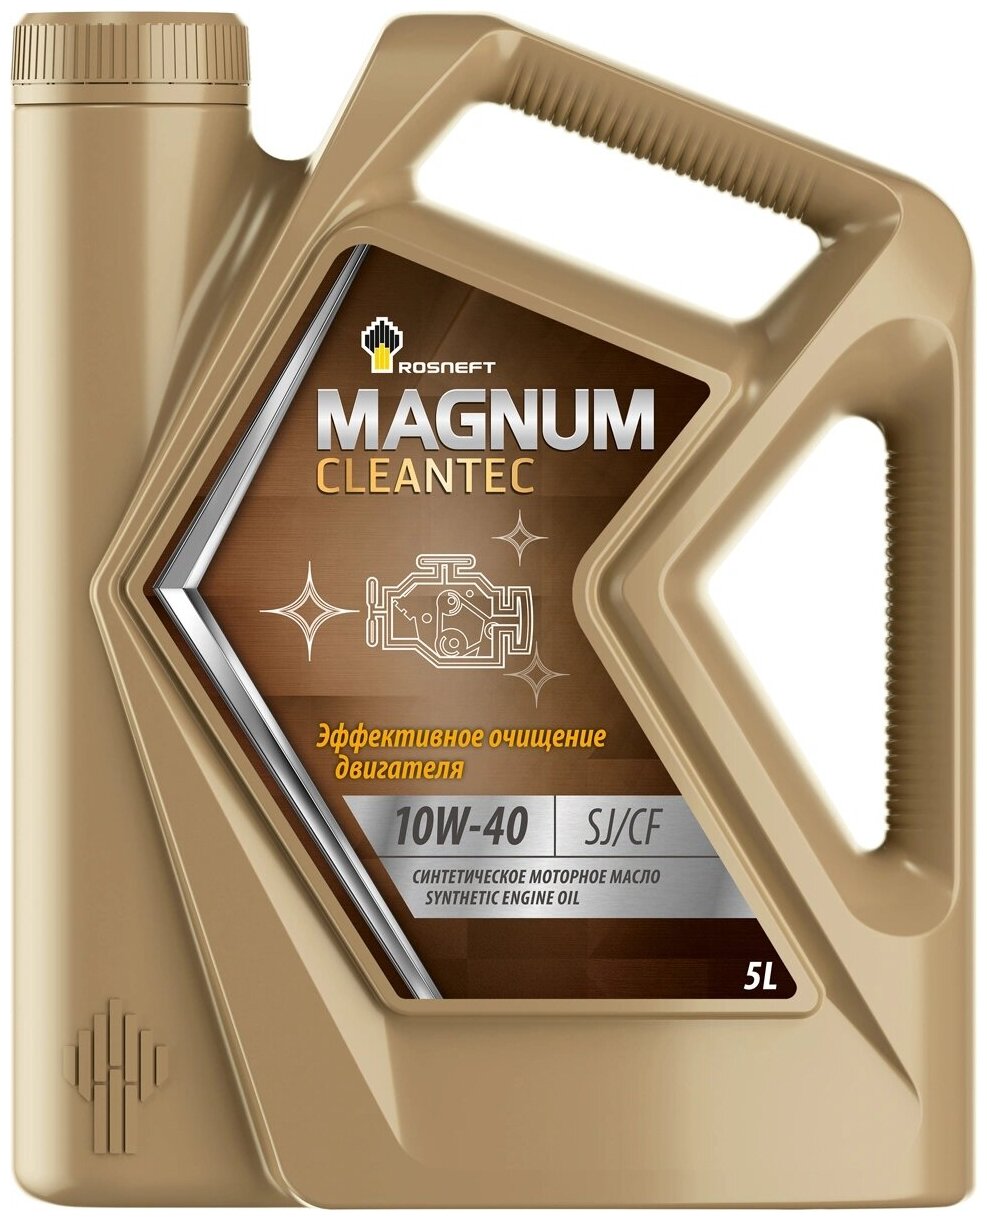 Синтетическое моторное масло Роснефть Magnum Cleantec 10W-40, 5 л